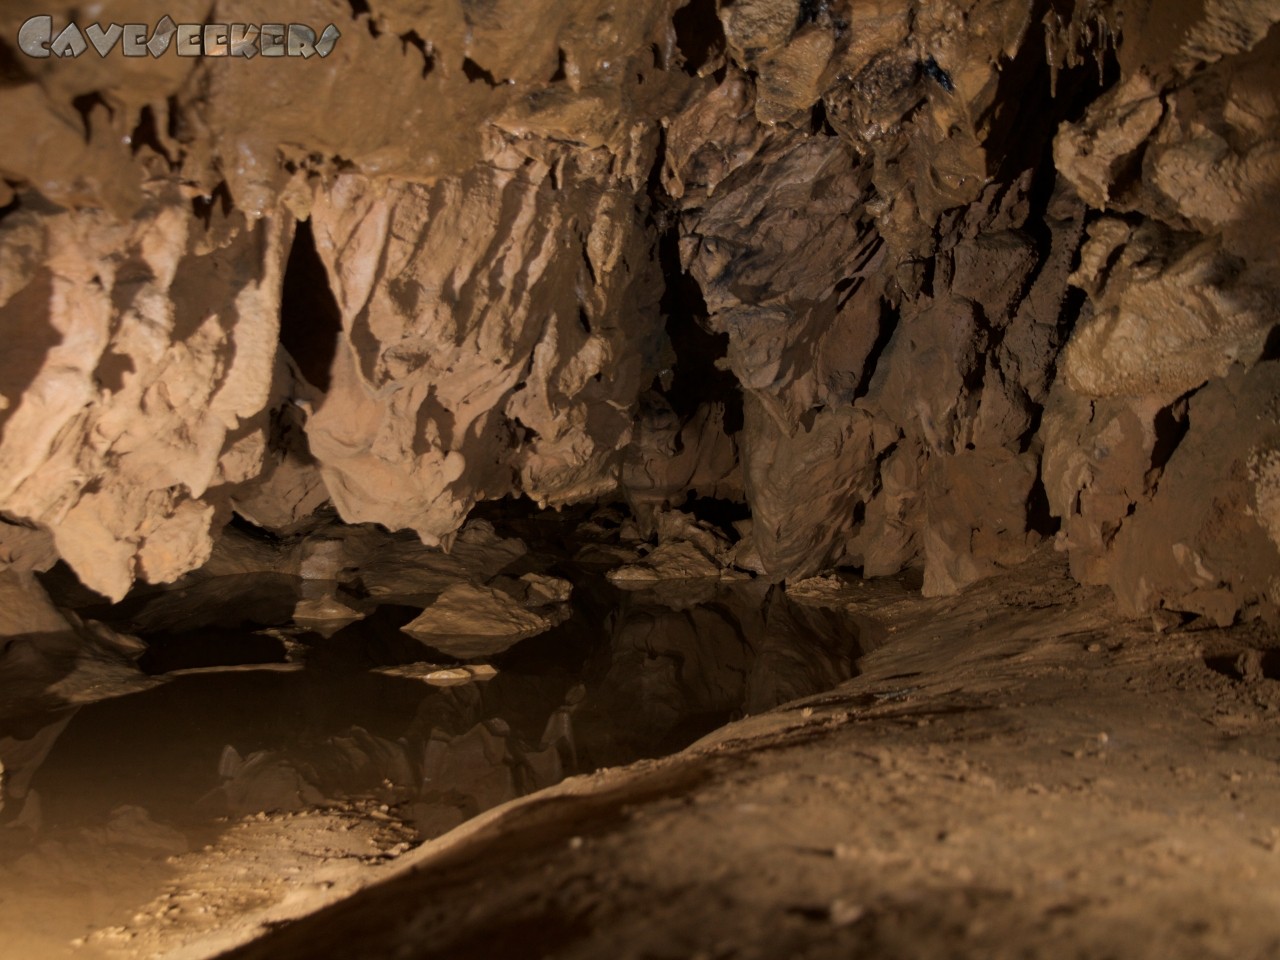 Pourpevelle: Der Anfang der unteren Strecke zur Höhle. Zur Warnung riecht es hier schön nach Urin. Wer hier ist, ist falsch.